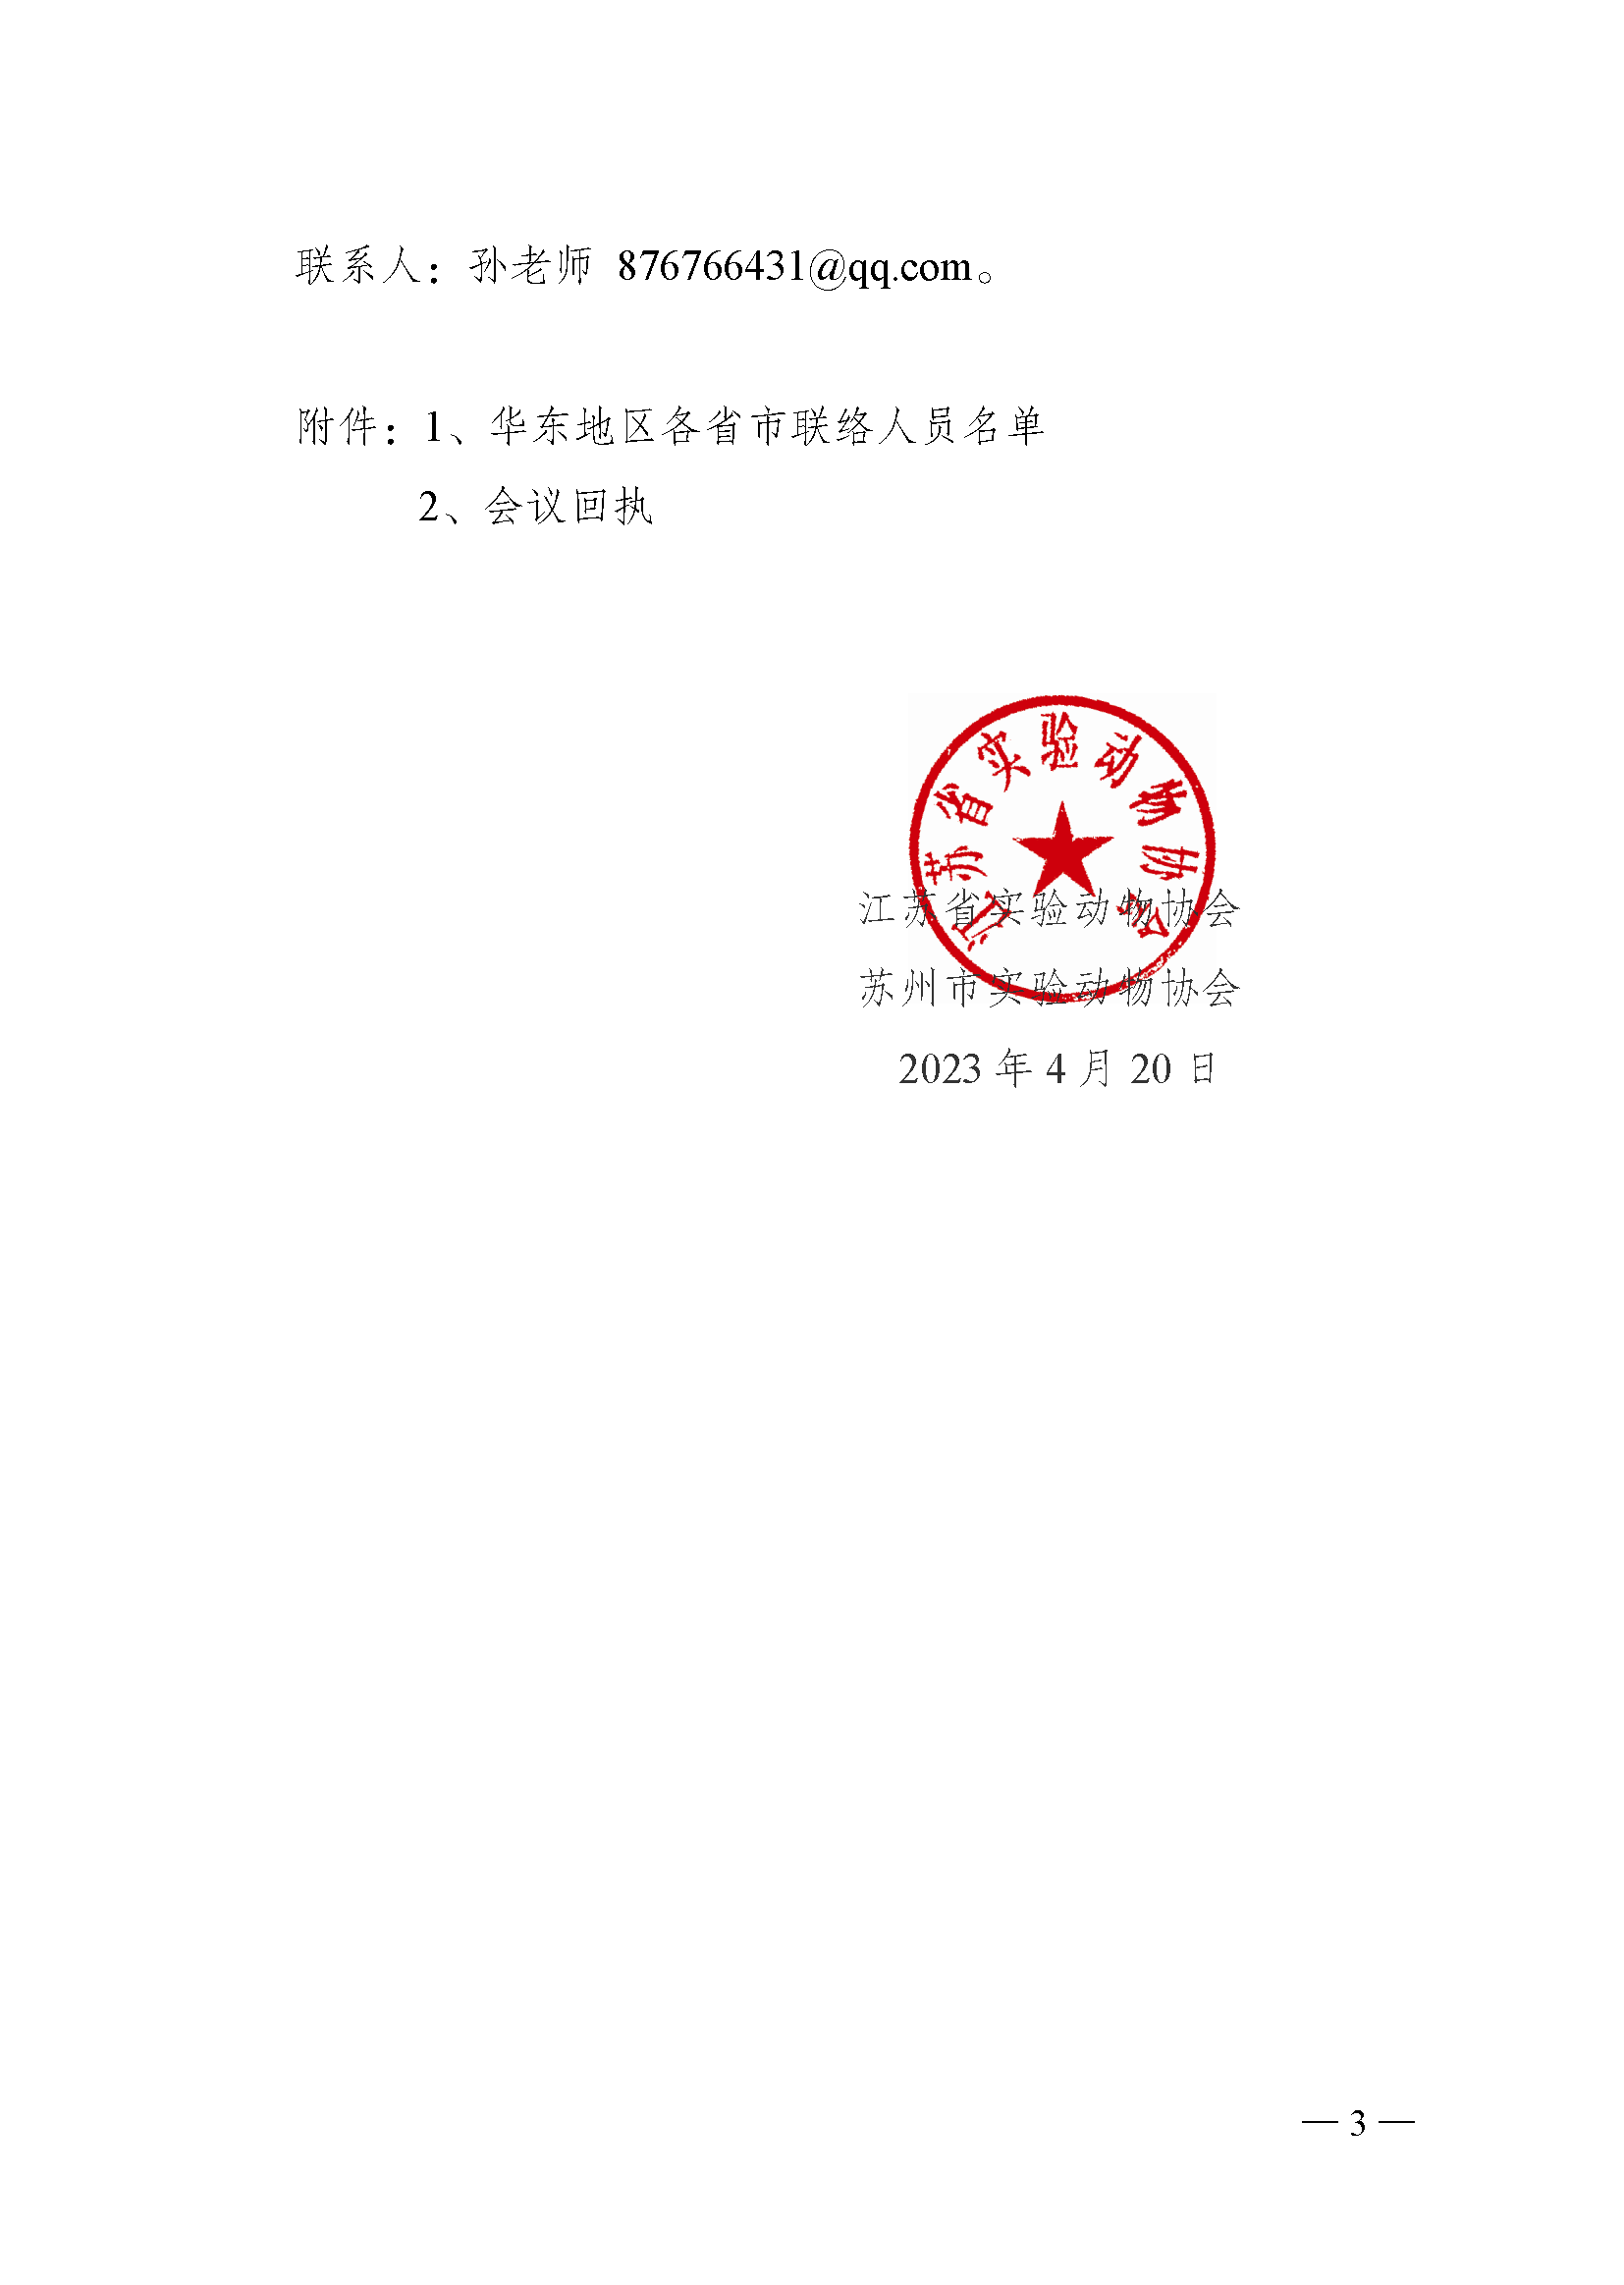 关于召开华东地区第十六届实验动物科学学术交流会的通知_页面_3.png